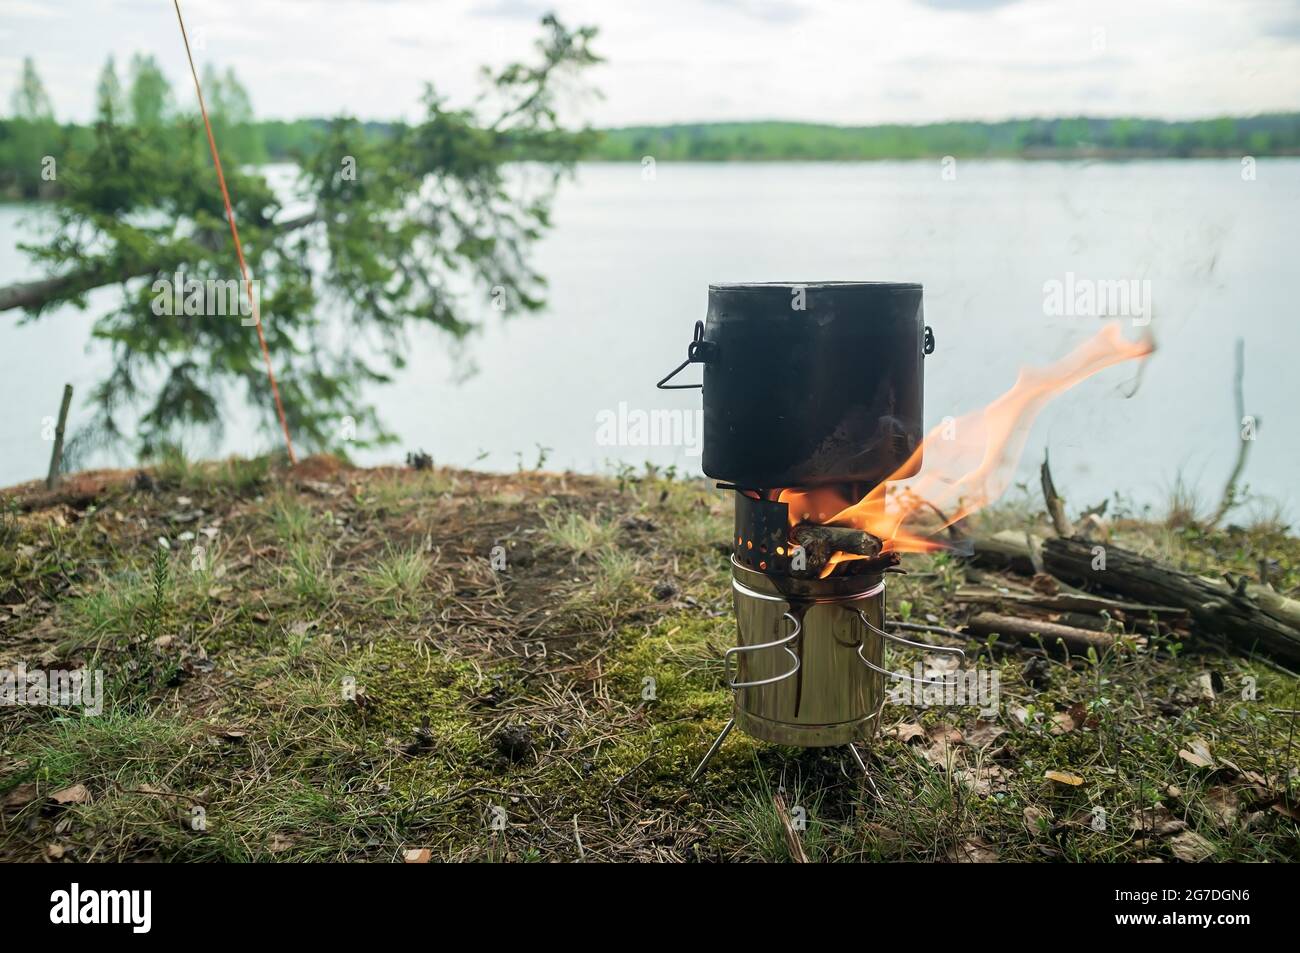 El cornamenta con comida para cocinar está sobre un quemador portátil de metal desde el que hay una llama, de la madera quemada, sobre una roca. Foto de stock